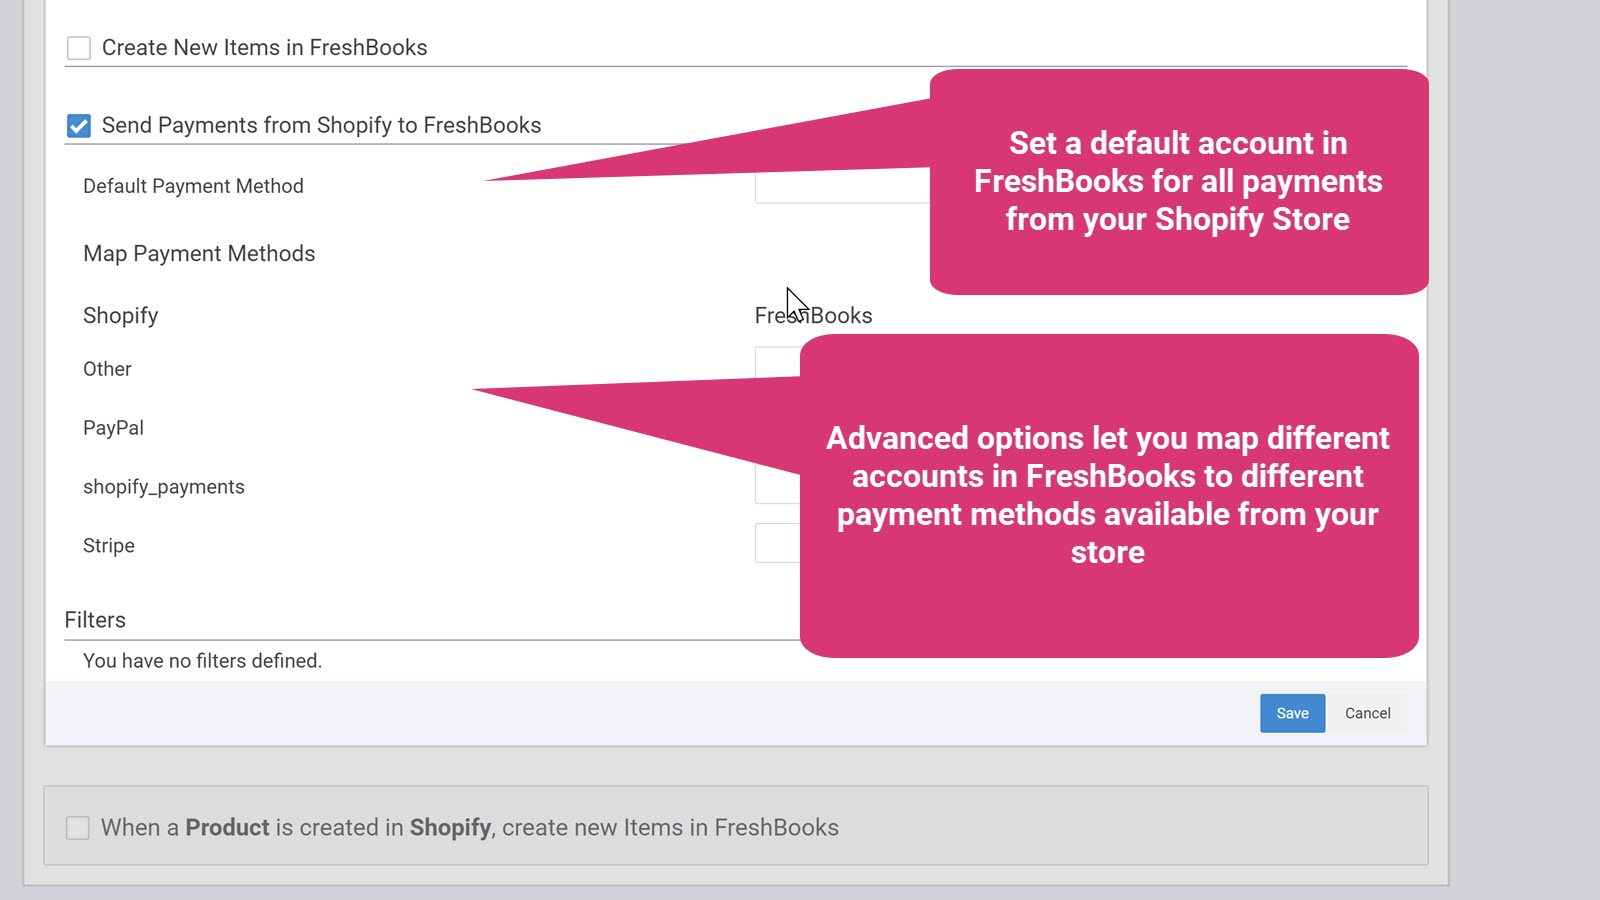 Kortlæg betalingsmuligheder til konti i FreshBooks